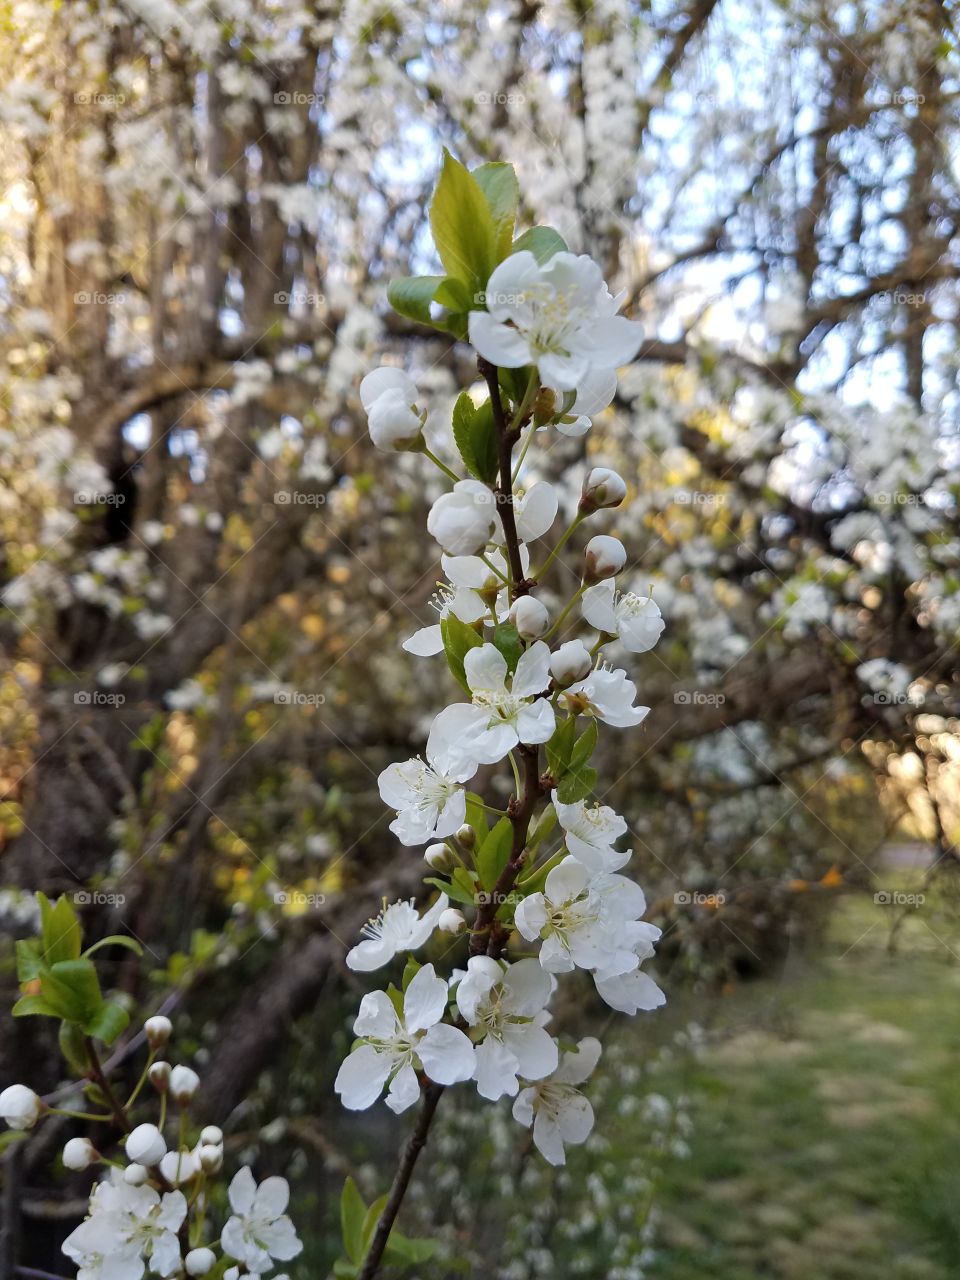 Backyard blossoms